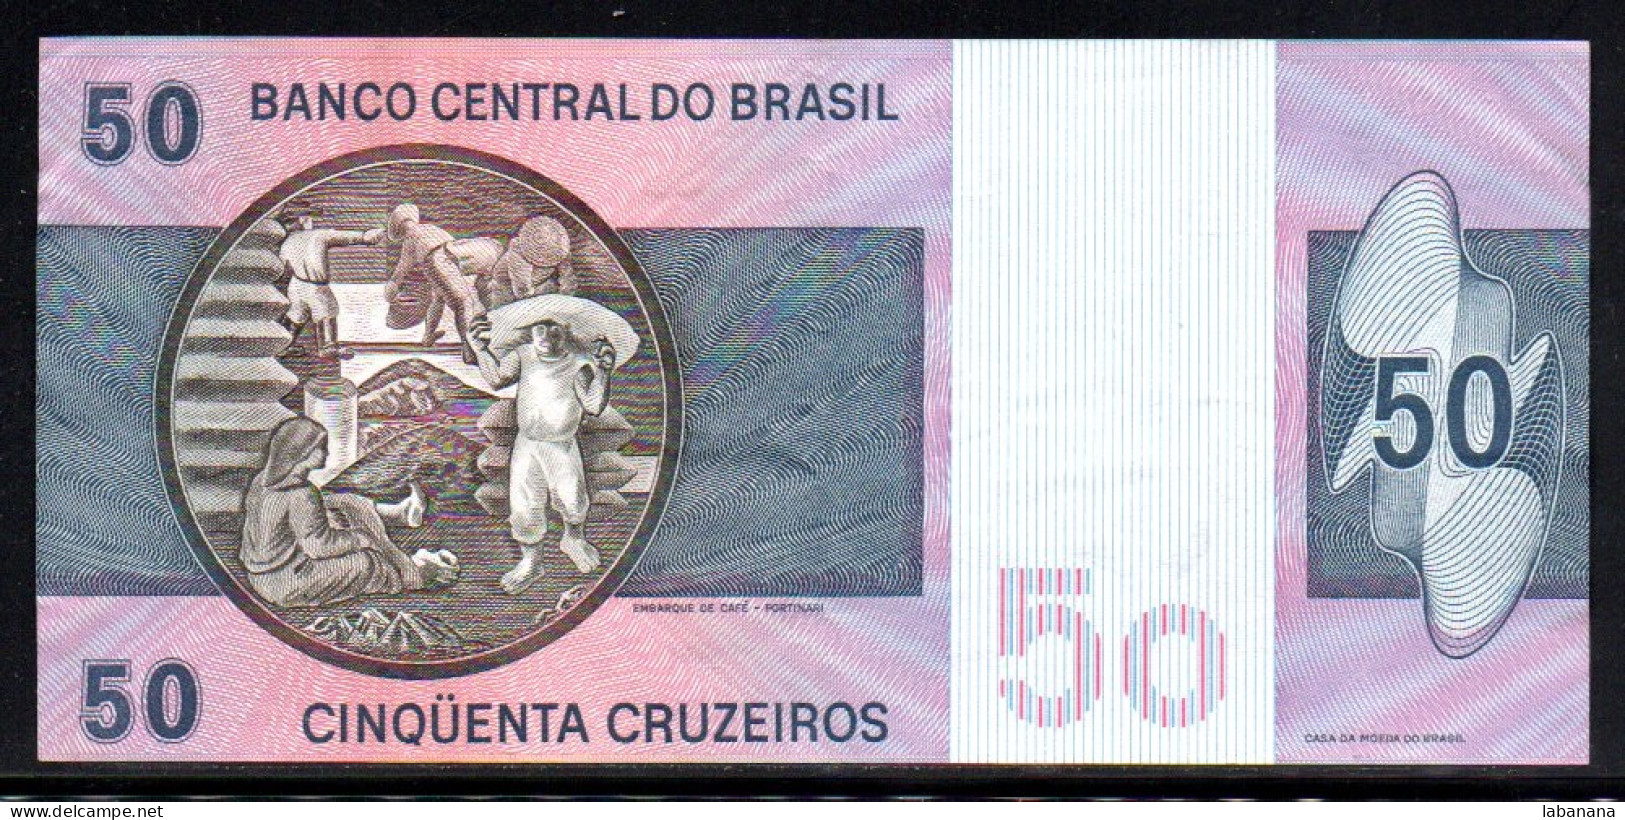 659-Brésil 50 Cruzeiros 1970 A0306 - Brésil